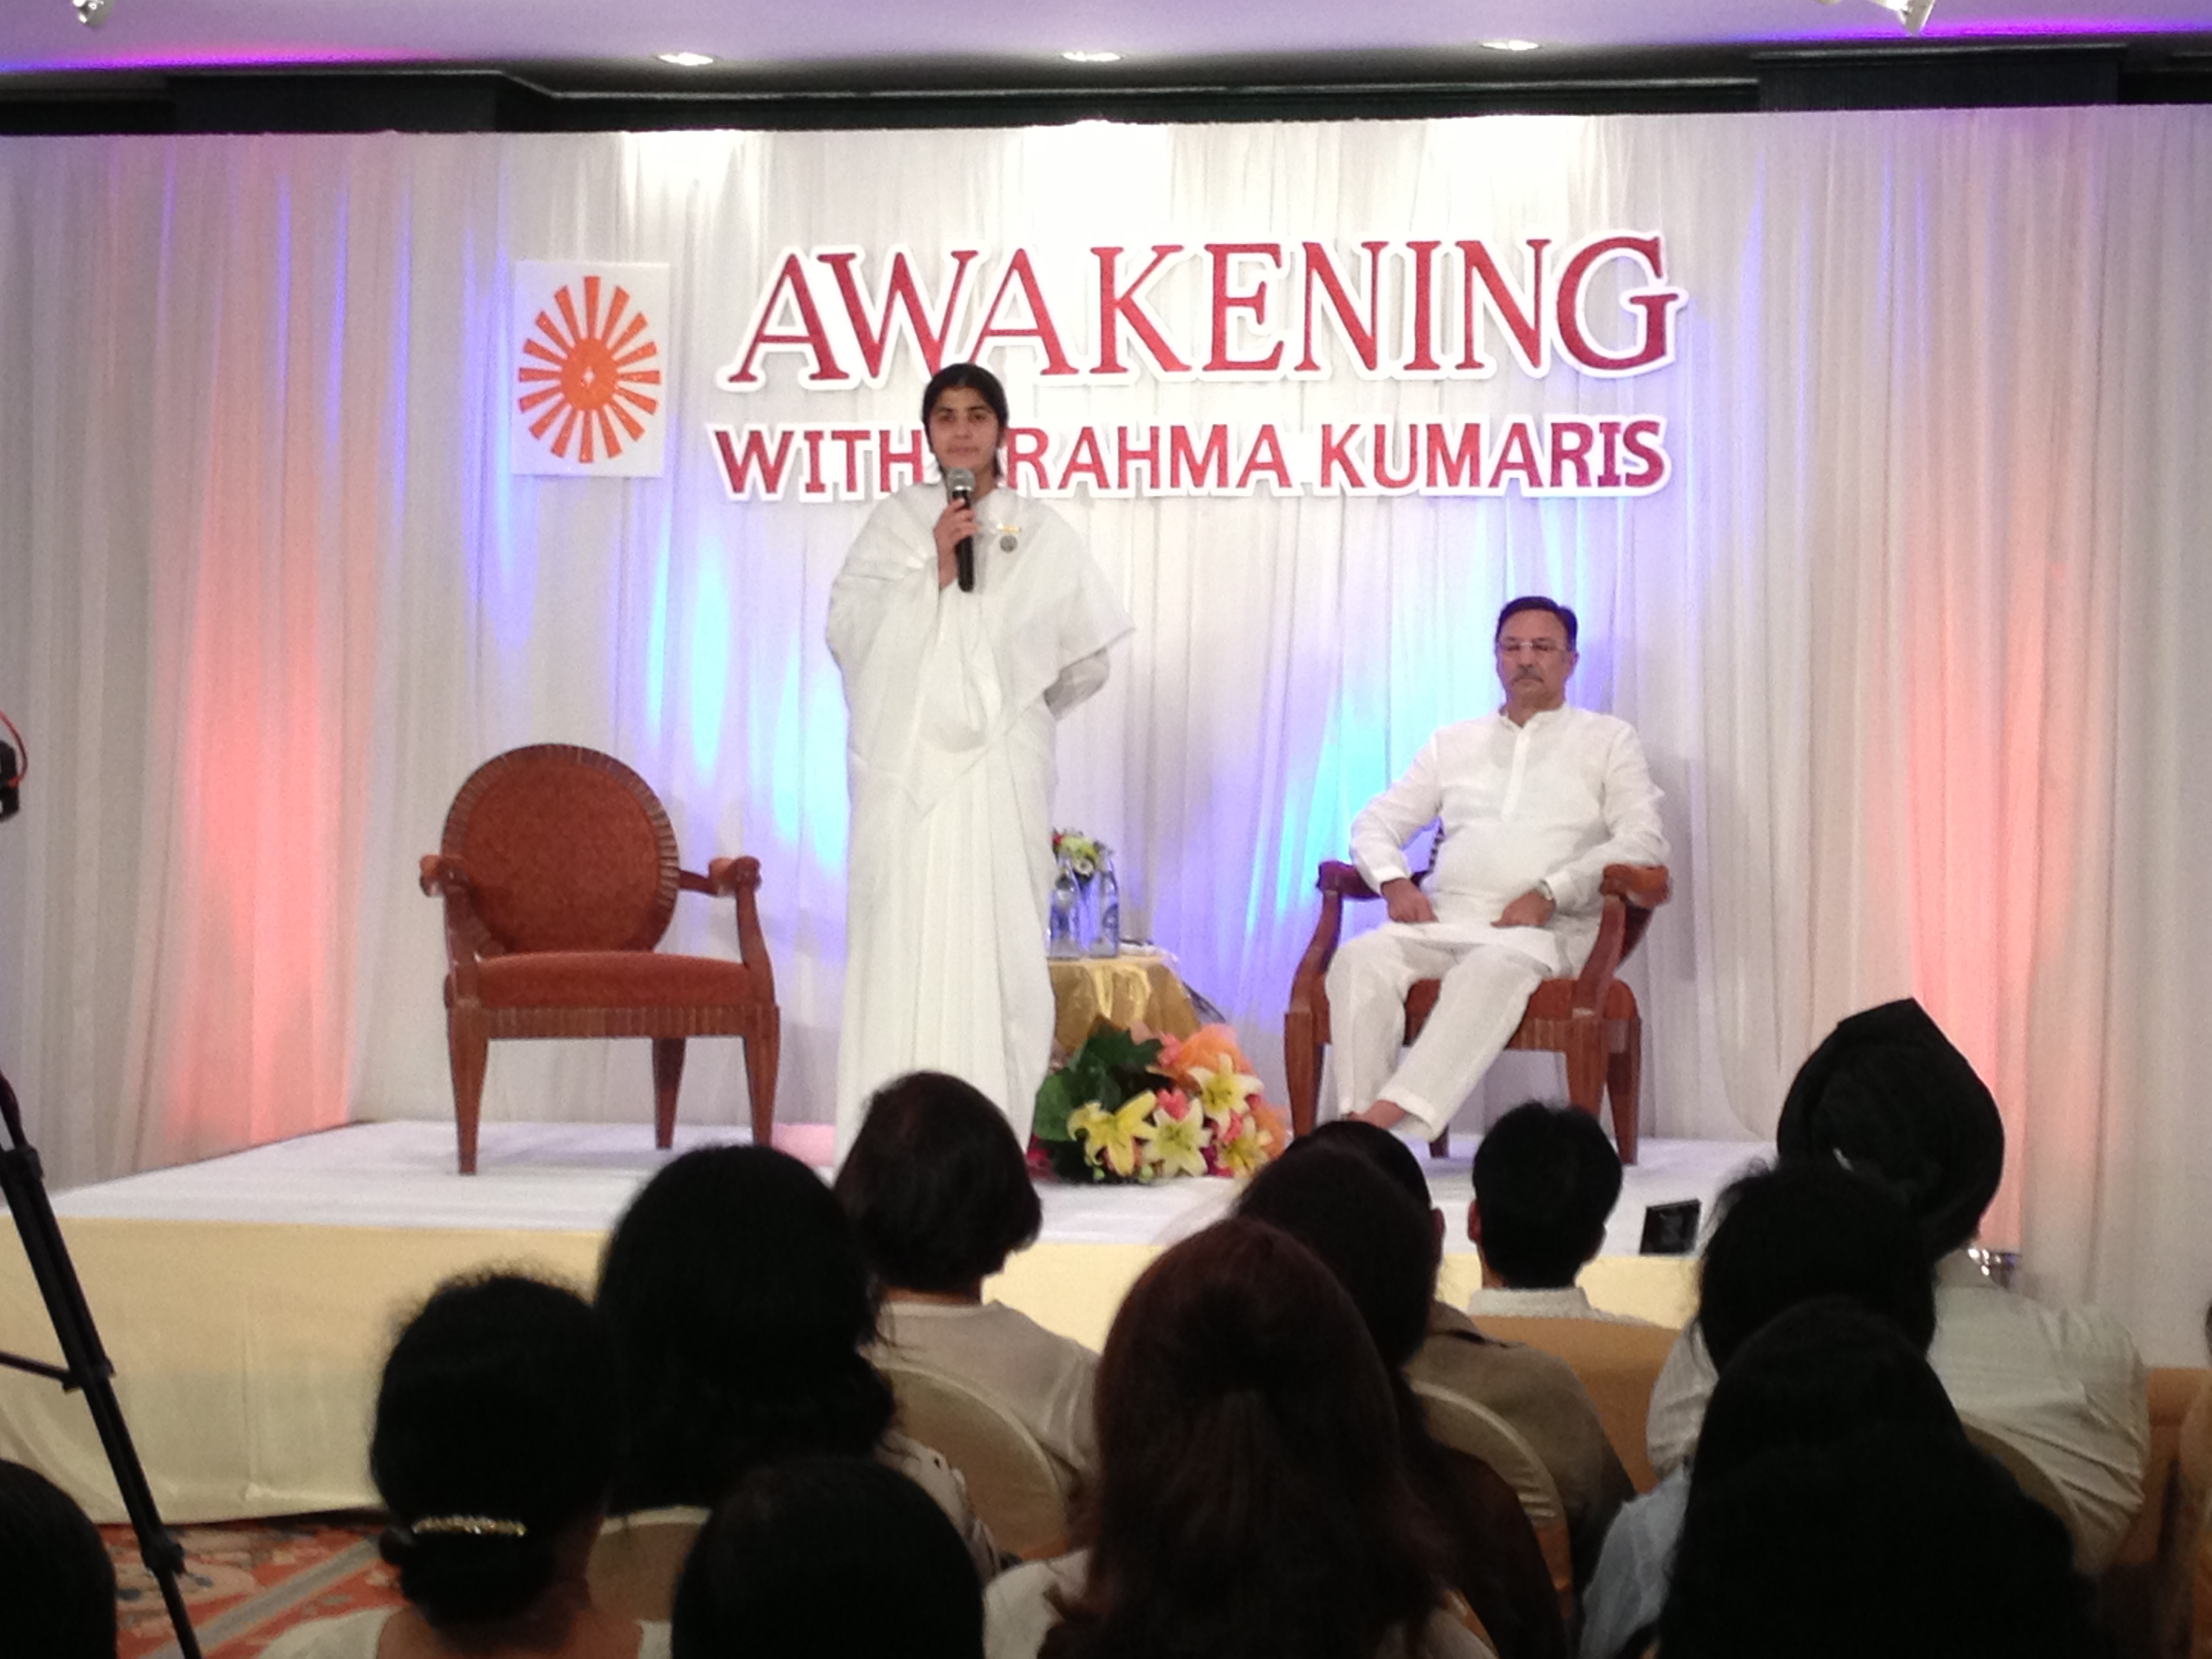 Awakening with the Brahma Kumaris